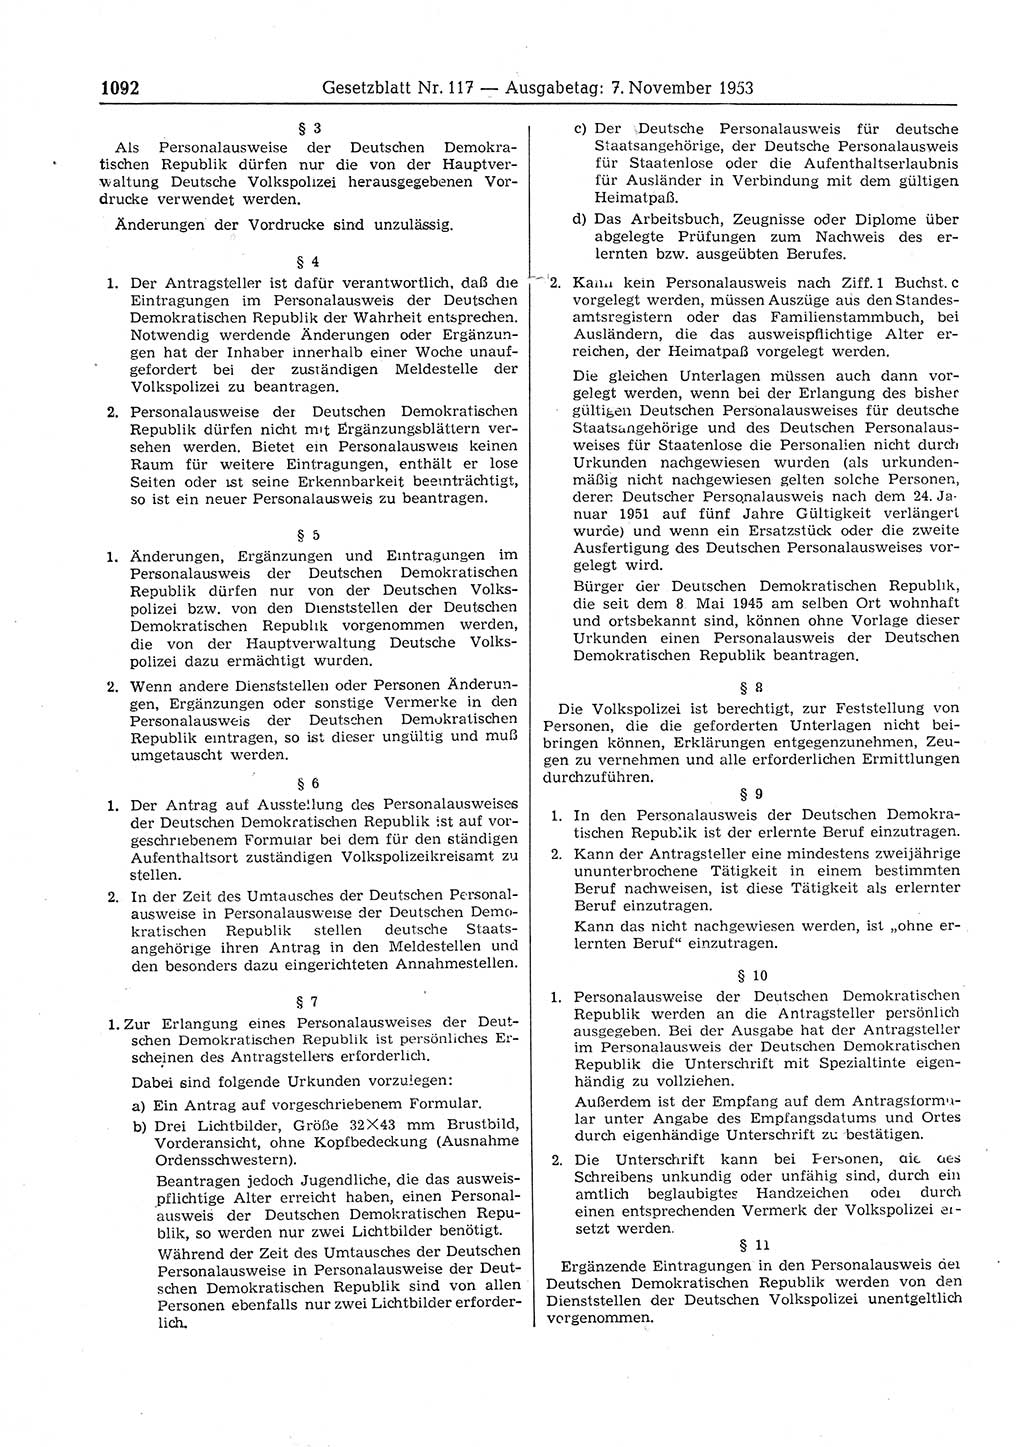 Gesetzblatt (GBl.) der Deutschen Demokratischen Republik (DDR) 1953, Seite 1092 (GBl. DDR 1953, S. 1092)